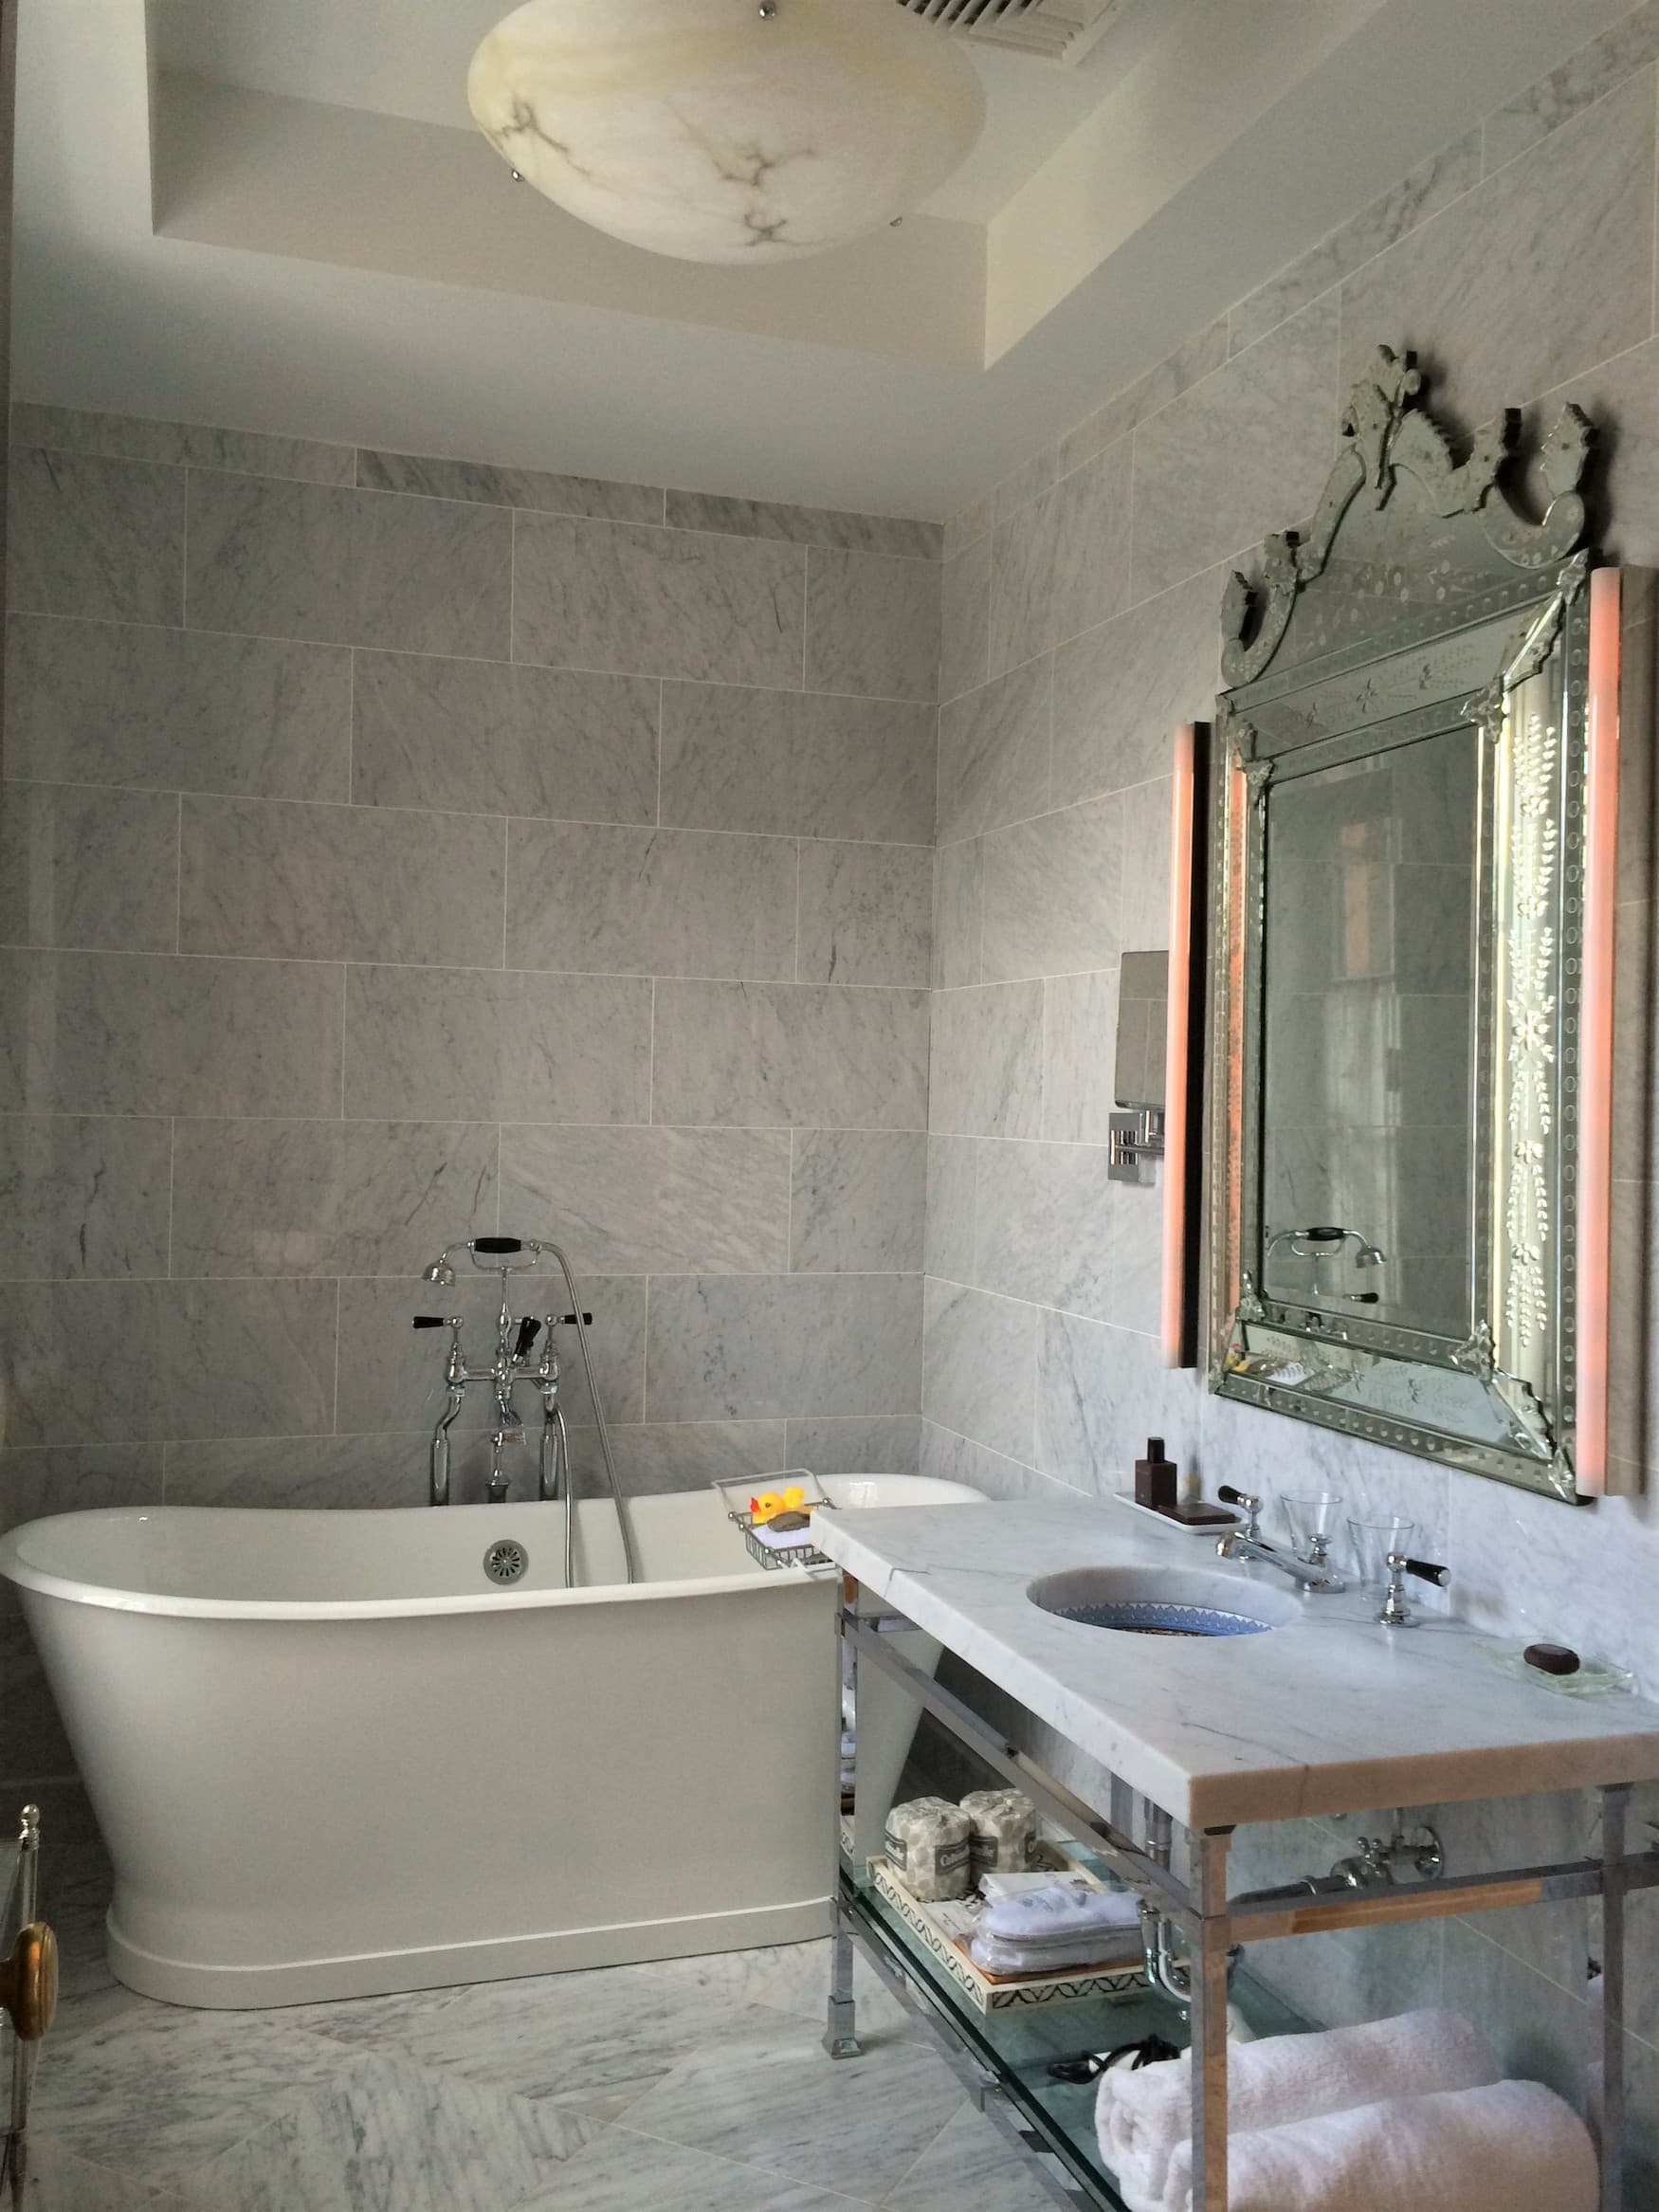 Luxuriöses Badezimmer in Grautönen in der Glenmere Mansion im Hudson Valley